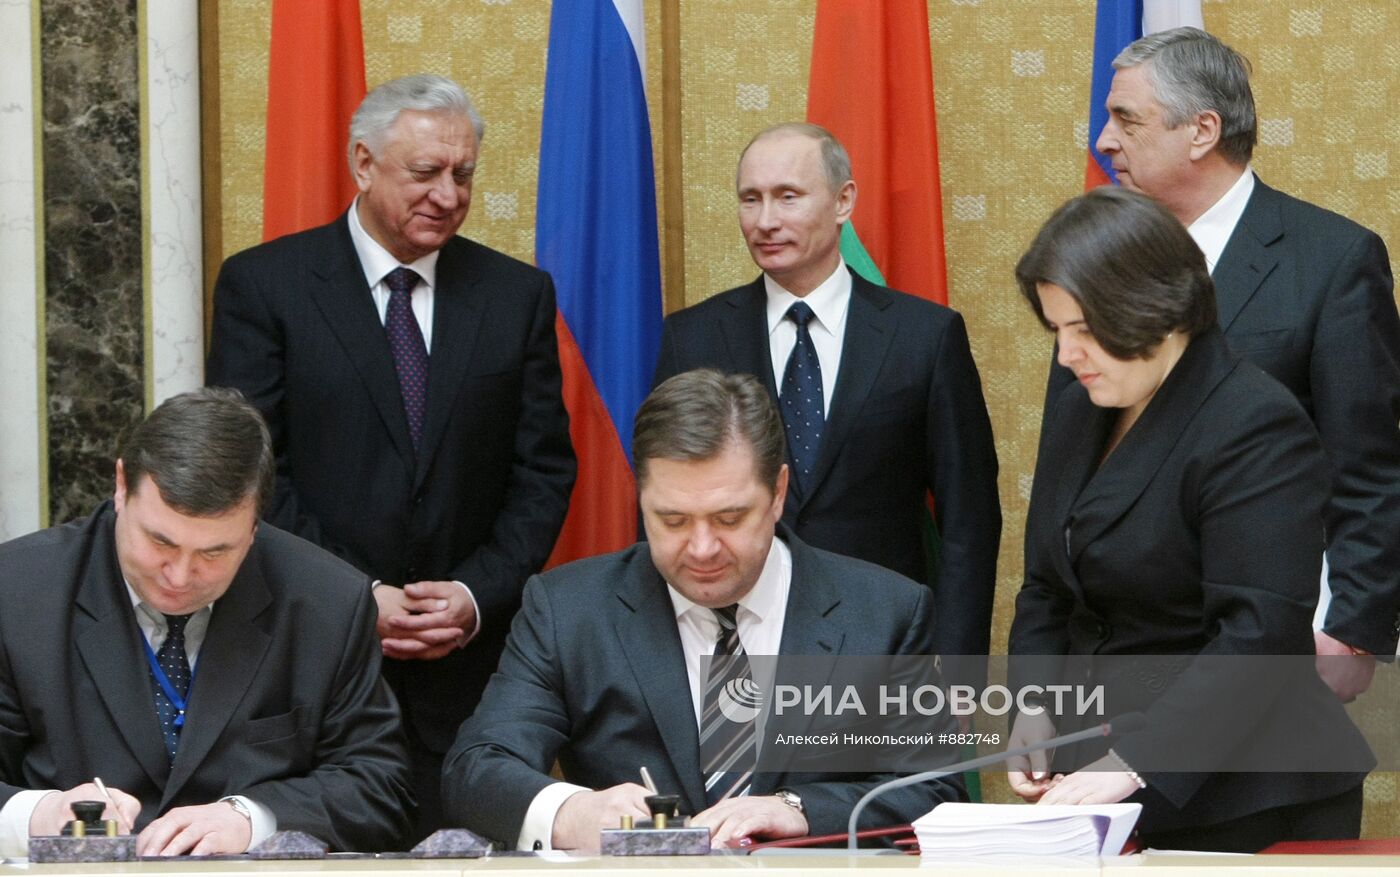 Подписание совместных документов в Минске